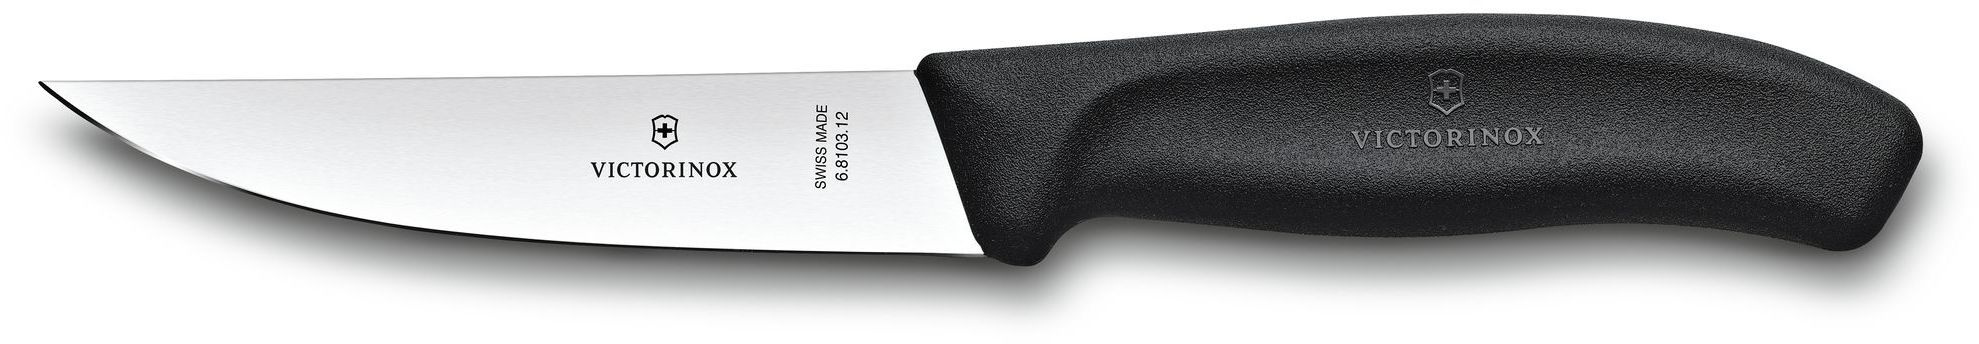 Нож кухонный Victorinox Swiss Classic (6.8103.12B) стальной разделочный лезв.120мм прямая заточка черный блистер